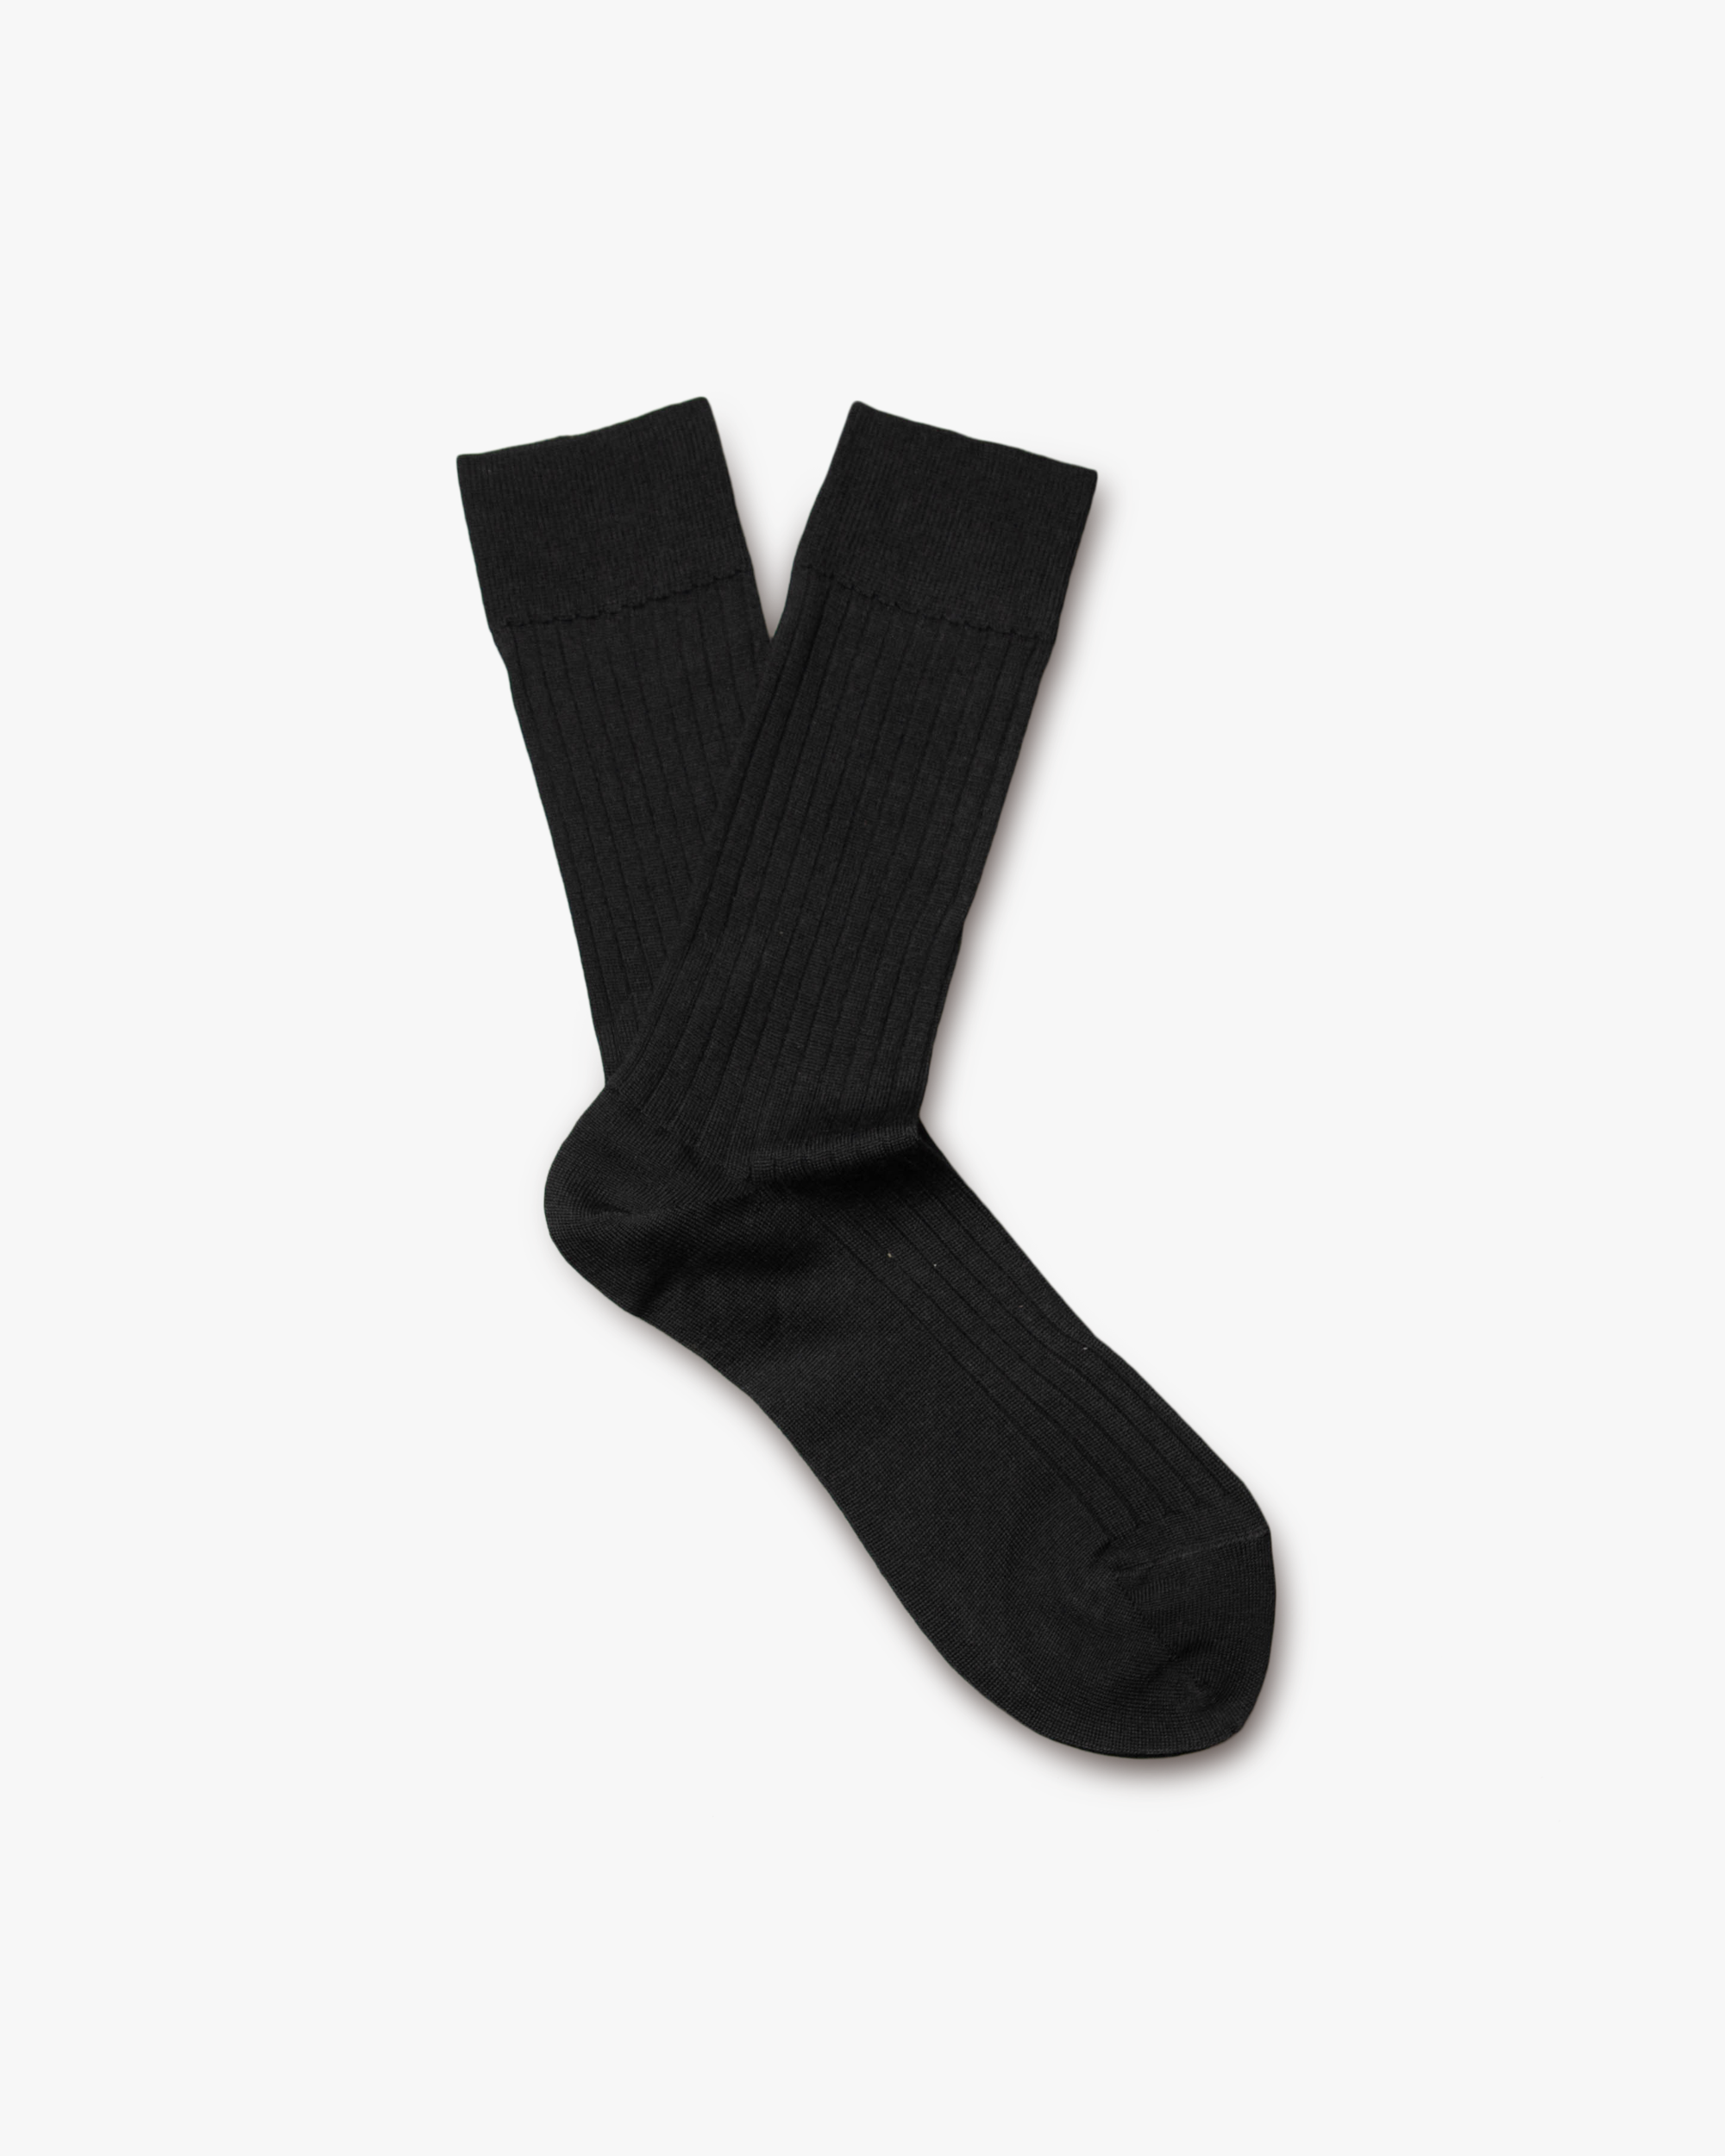 Ludvig – Merino Wool Socks – Black︱Myrqvist